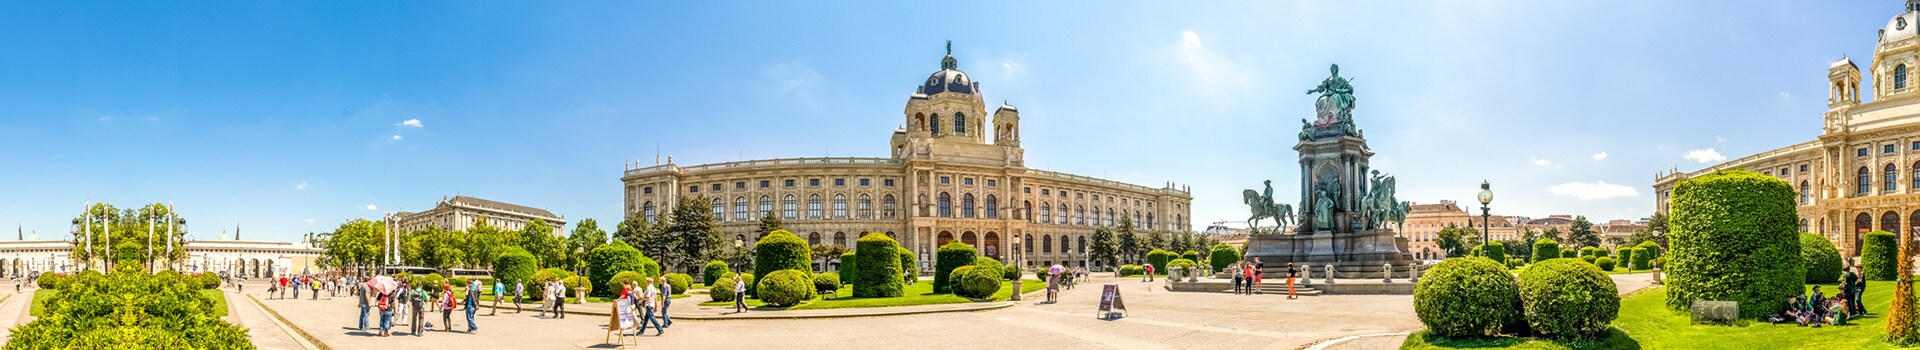 Porto - Vienna